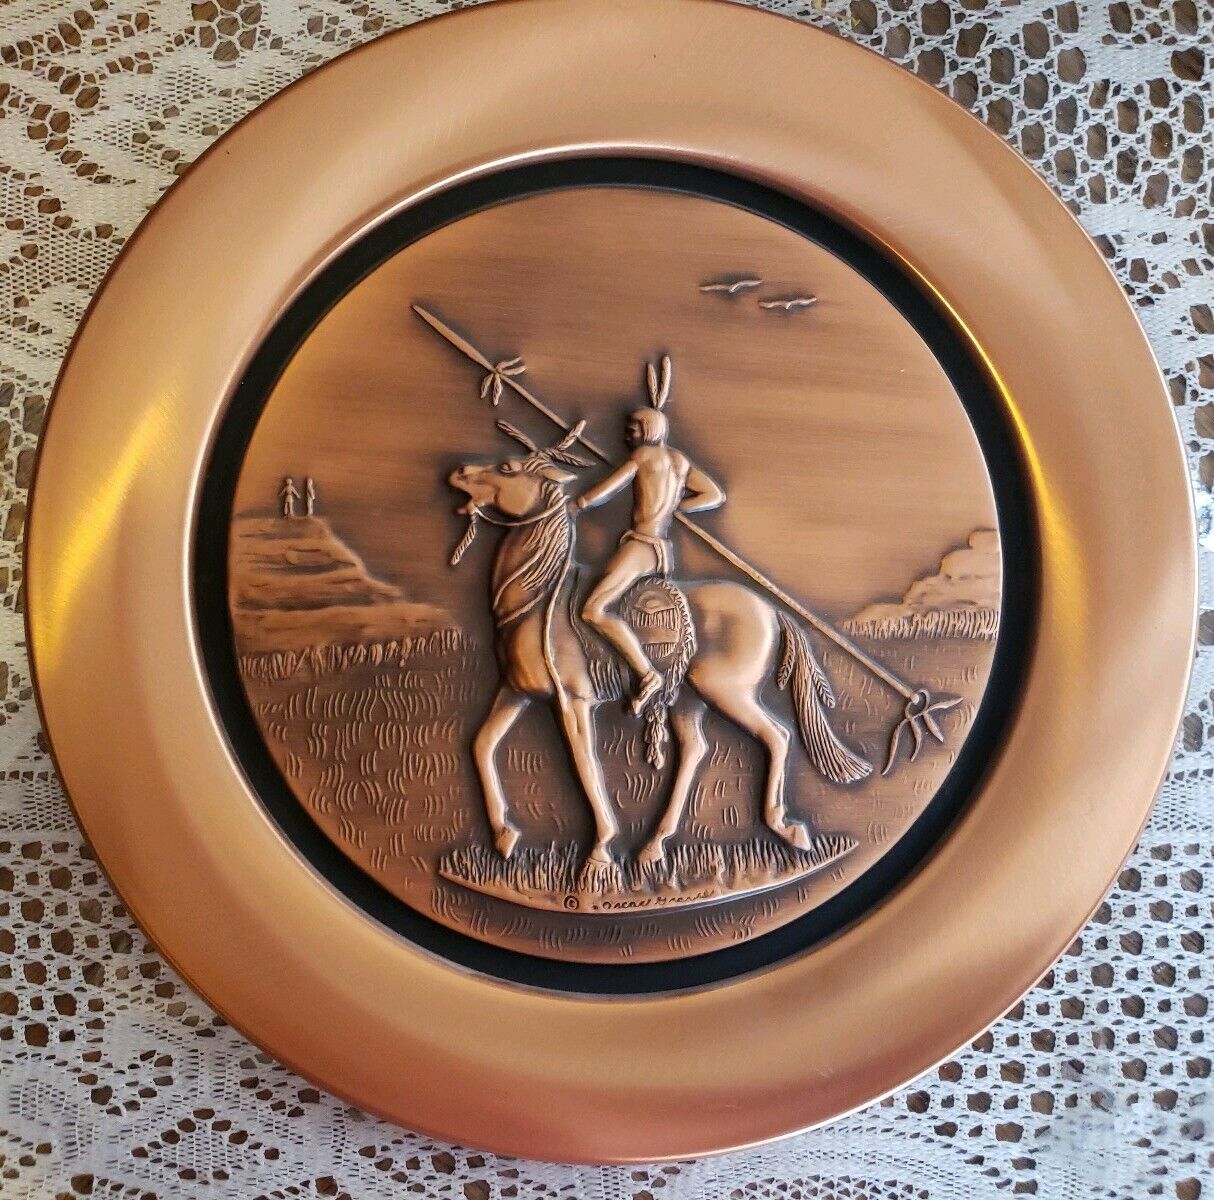 Comanche The Nobility of The Plains Oscar Marx Grave 999 Fine Pure Copper Plate